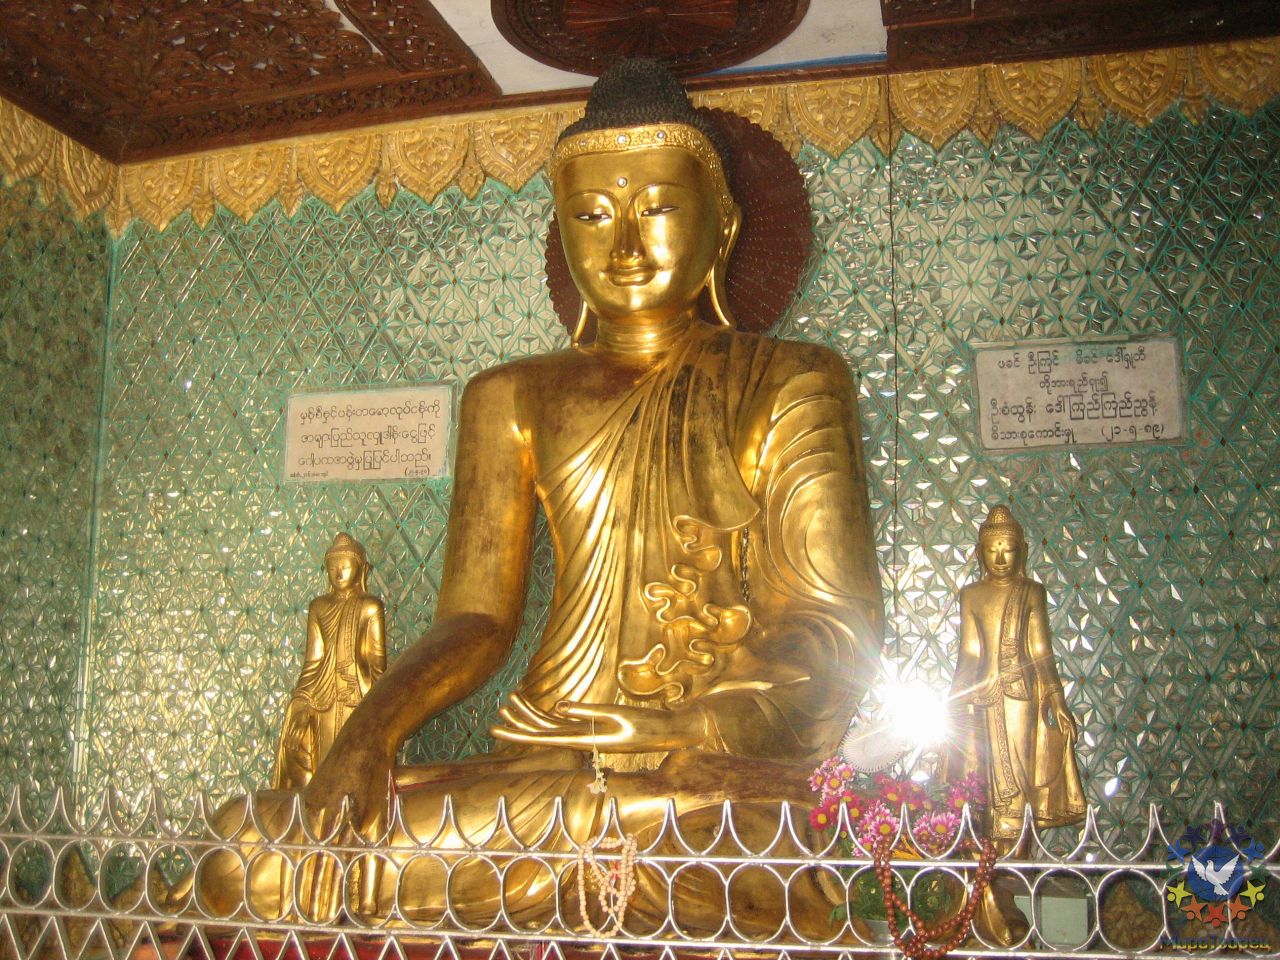 Над головой Будды изображён кармический диск - Бирма 2010, Зубов Михаил, часть 4